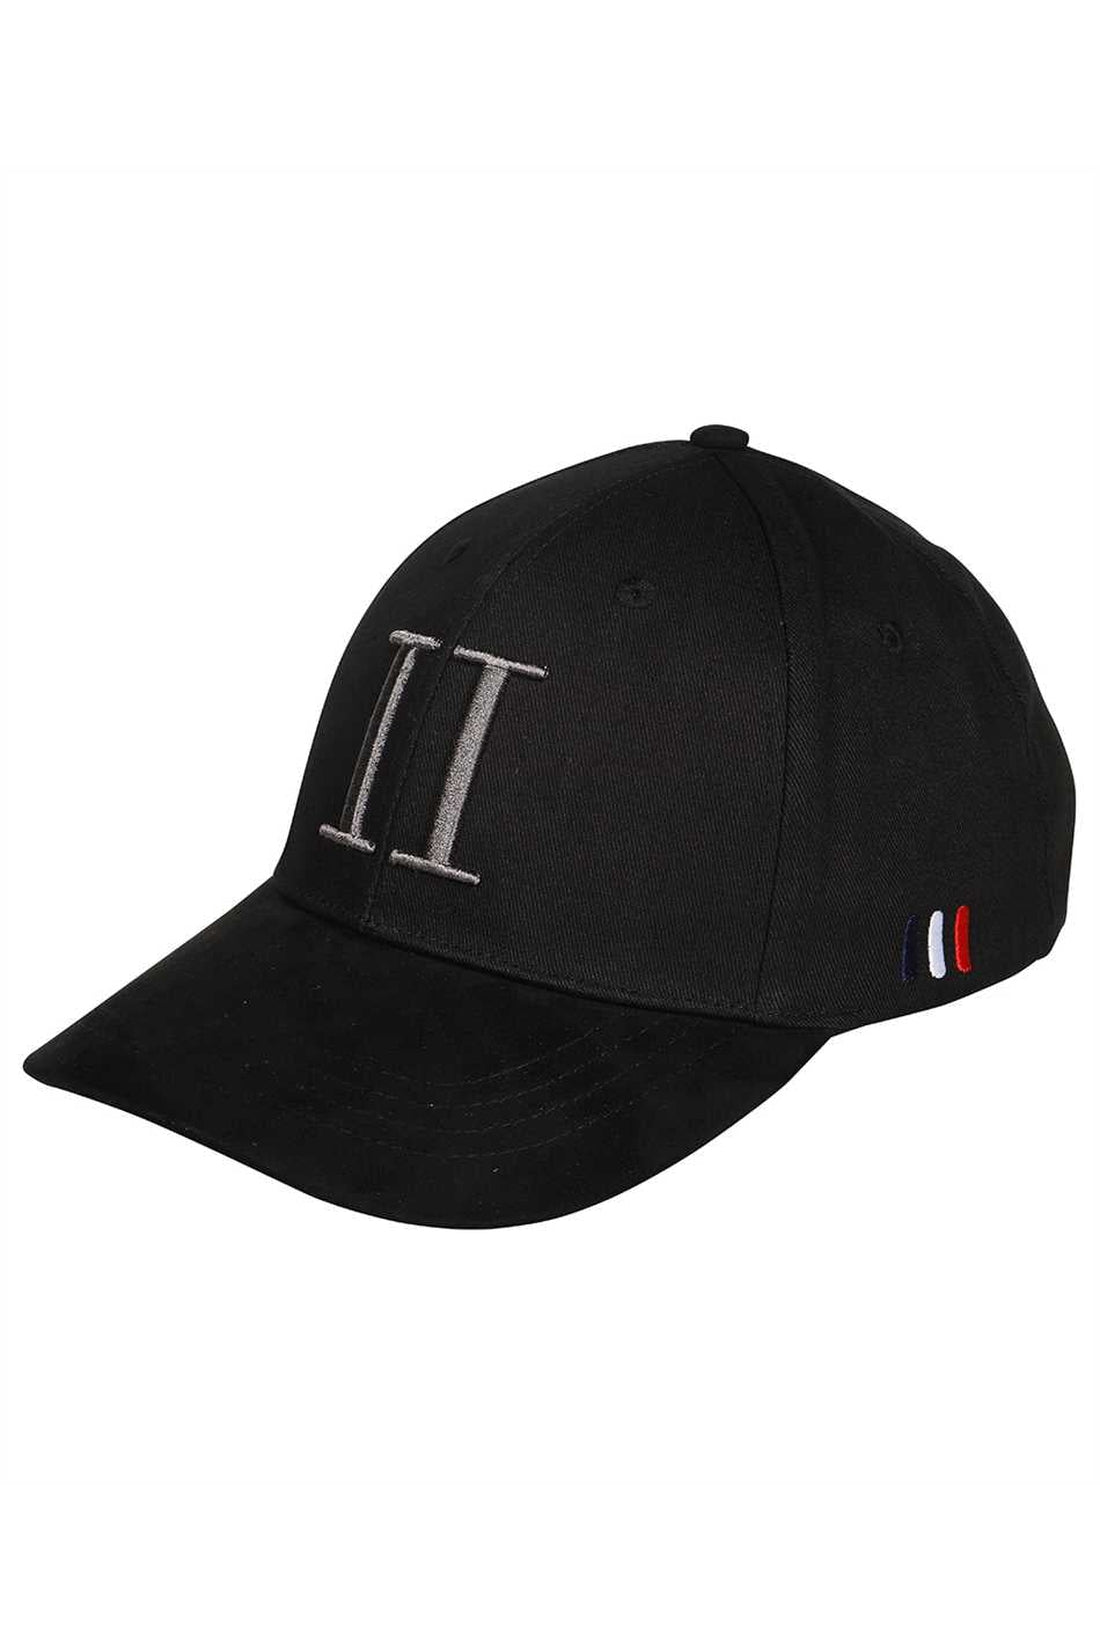 Les Deux-OUTLET-SALE-Logo baseball cap-ARCHIVIST